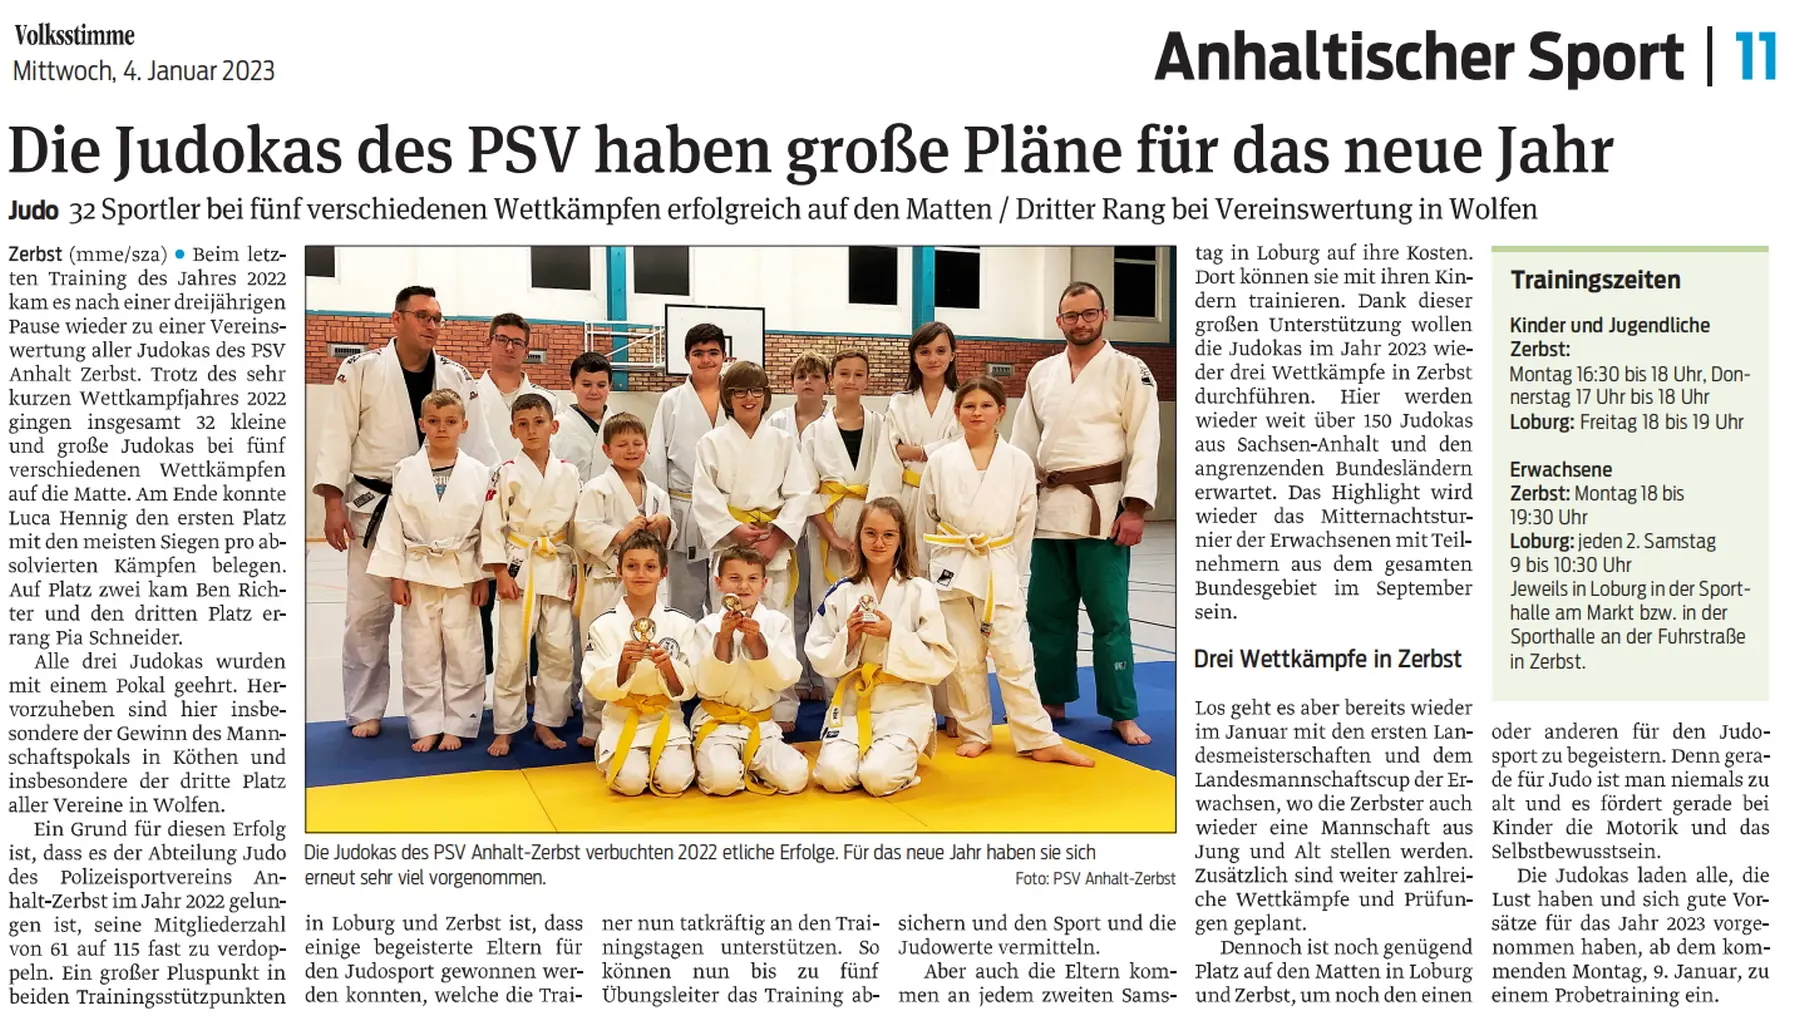 PSV Anhalt Zerbst in Zeitung